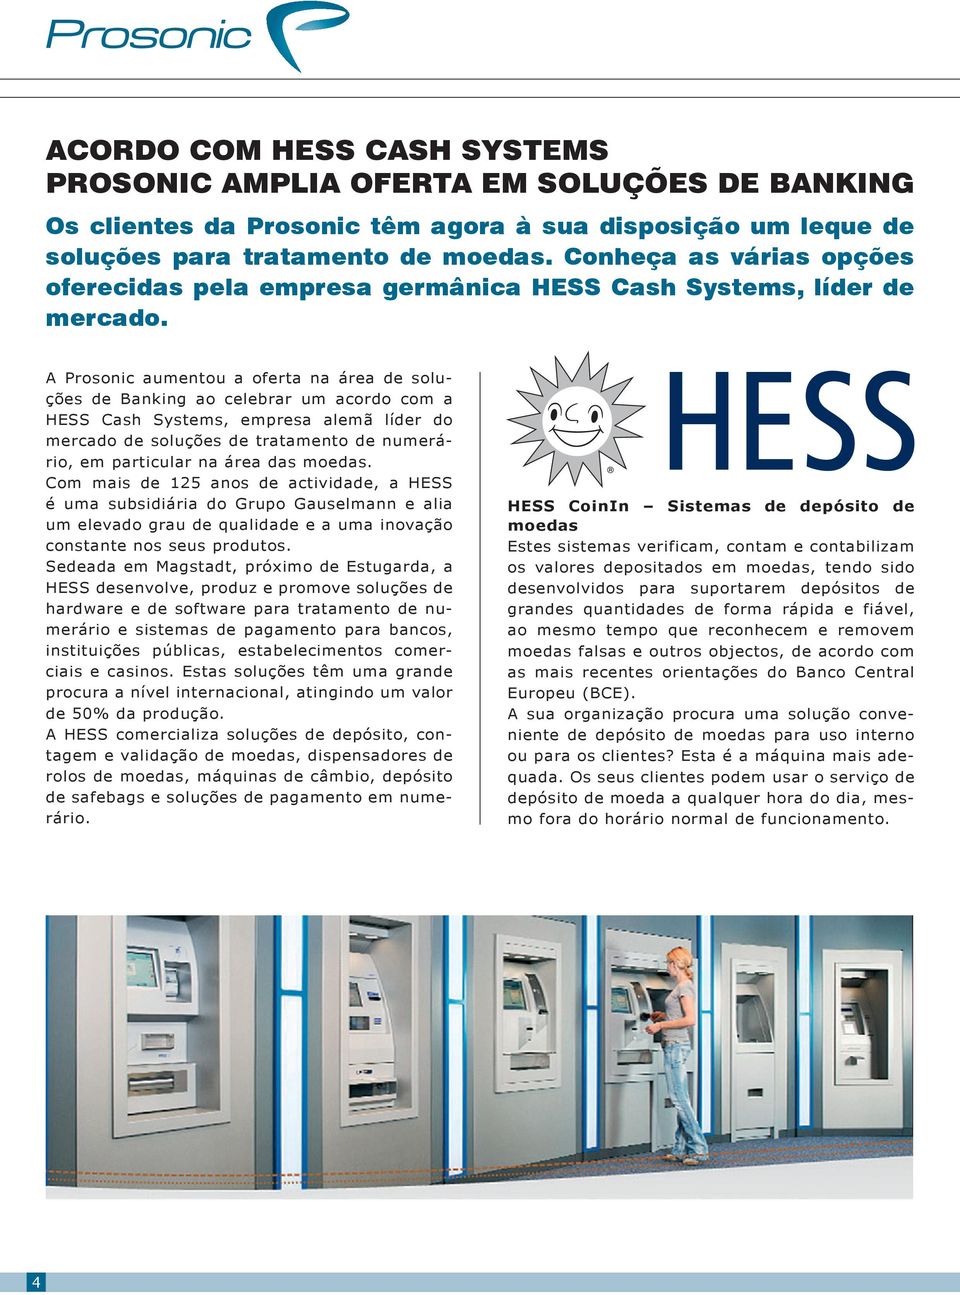 A Prosonic aumentou a oferta na área de soluções de Banking ao celebrar um acordo com a HESS Cash Systems, empresa alemã líder do mercado de soluções de tratamento de numerário, em particular na área